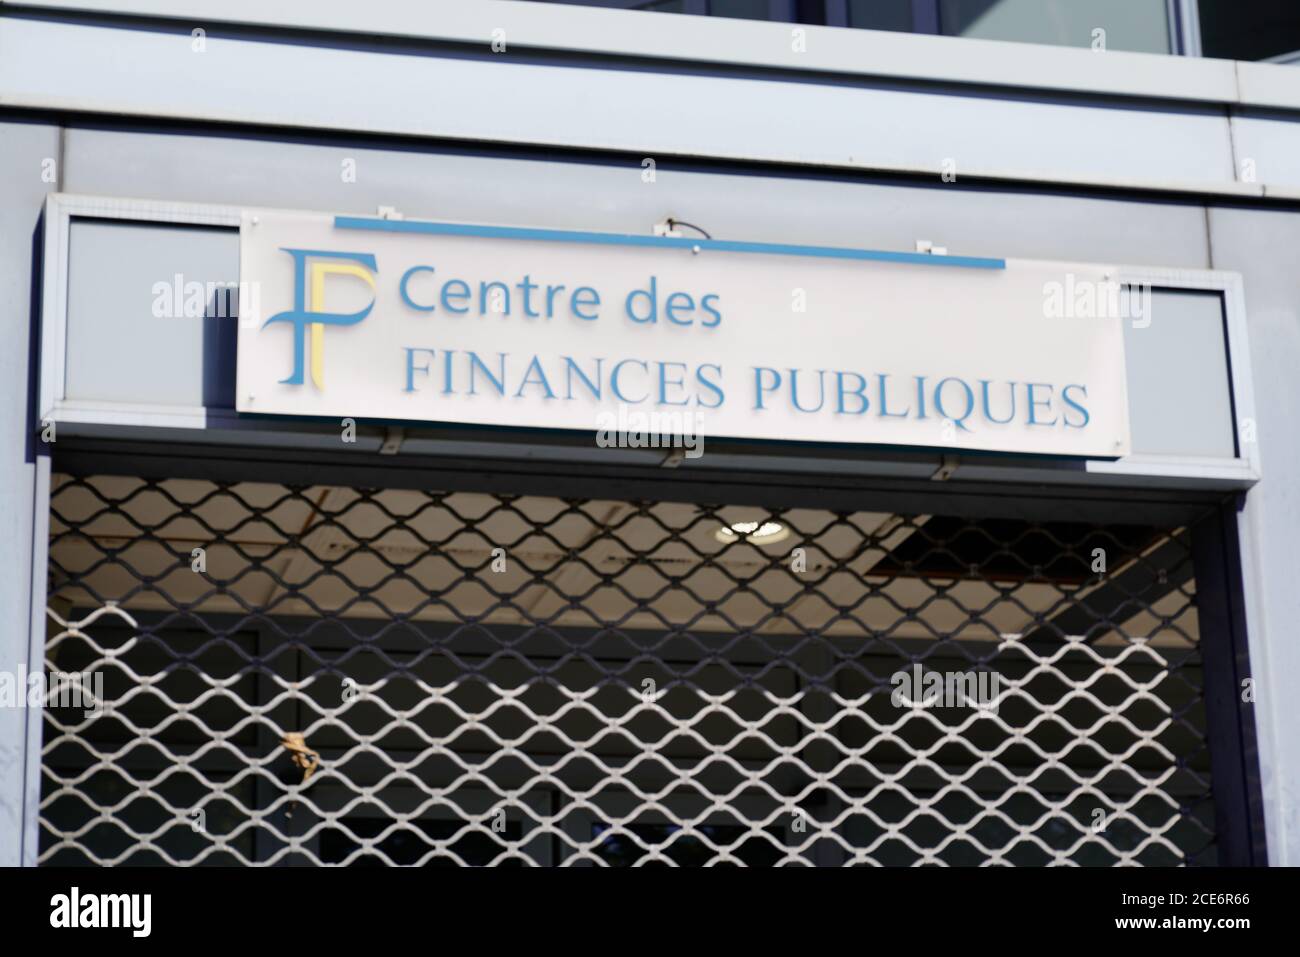 Bordeaux , Aquitaine / France - 08 25 2020 : centre des Finances Publiques logo and text sign front of building office French public finance administr Stock Photo